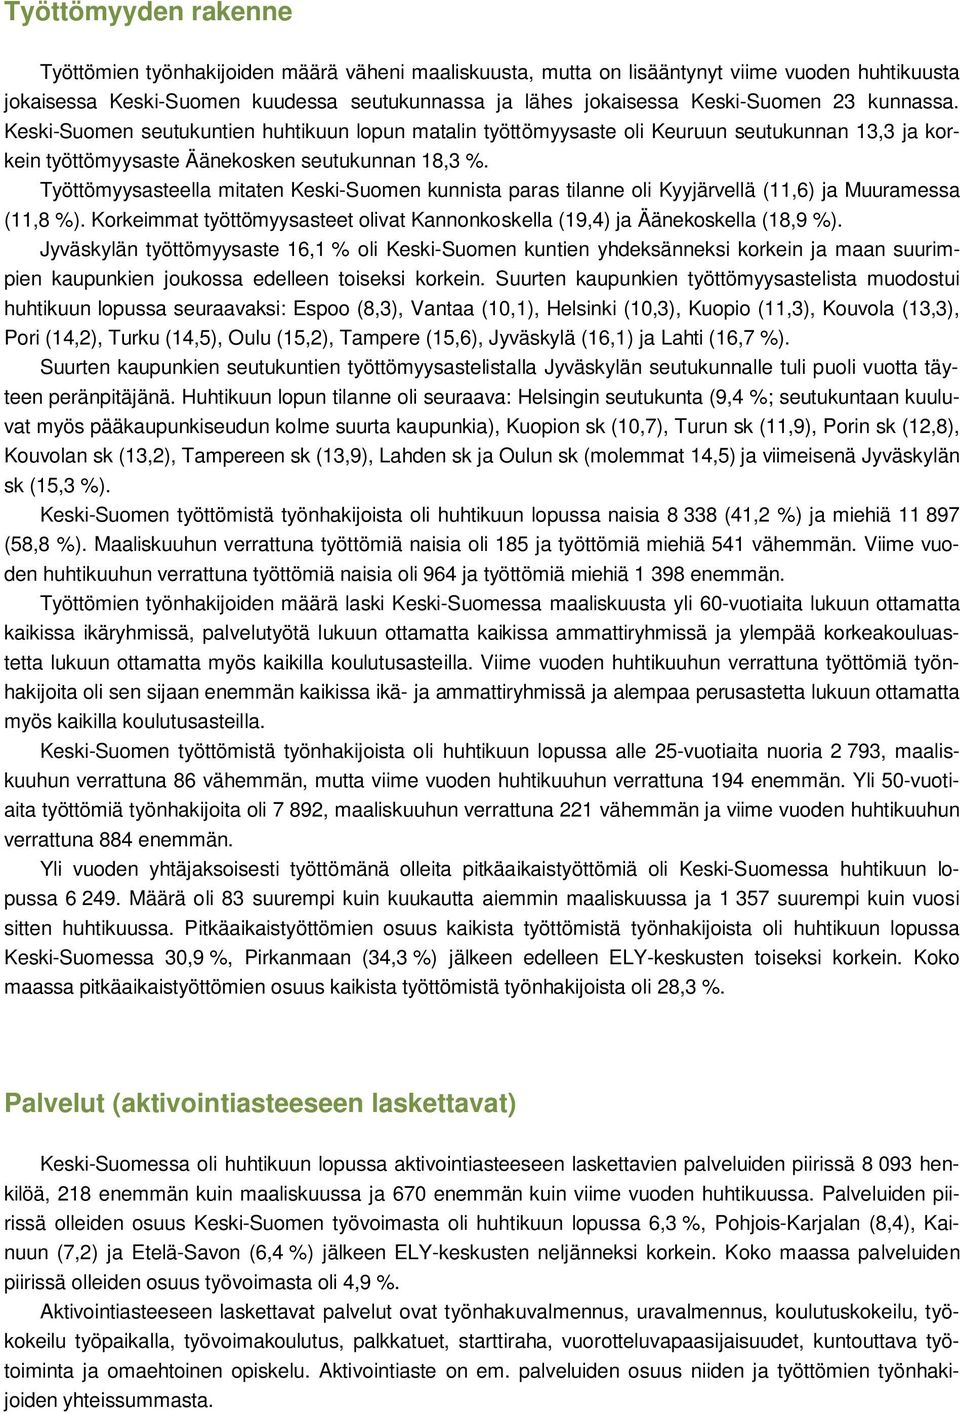 Työttömyysasteella mitaten Keski-Suomen kunnista paras tilanne oli Kyyjärvellä (11,6) ja Muuramessa (11,8 %). Korkeimmat työttömyysasteet olivat Kannonkoskella (19,4) ja Äänekoskella (18,9 %).